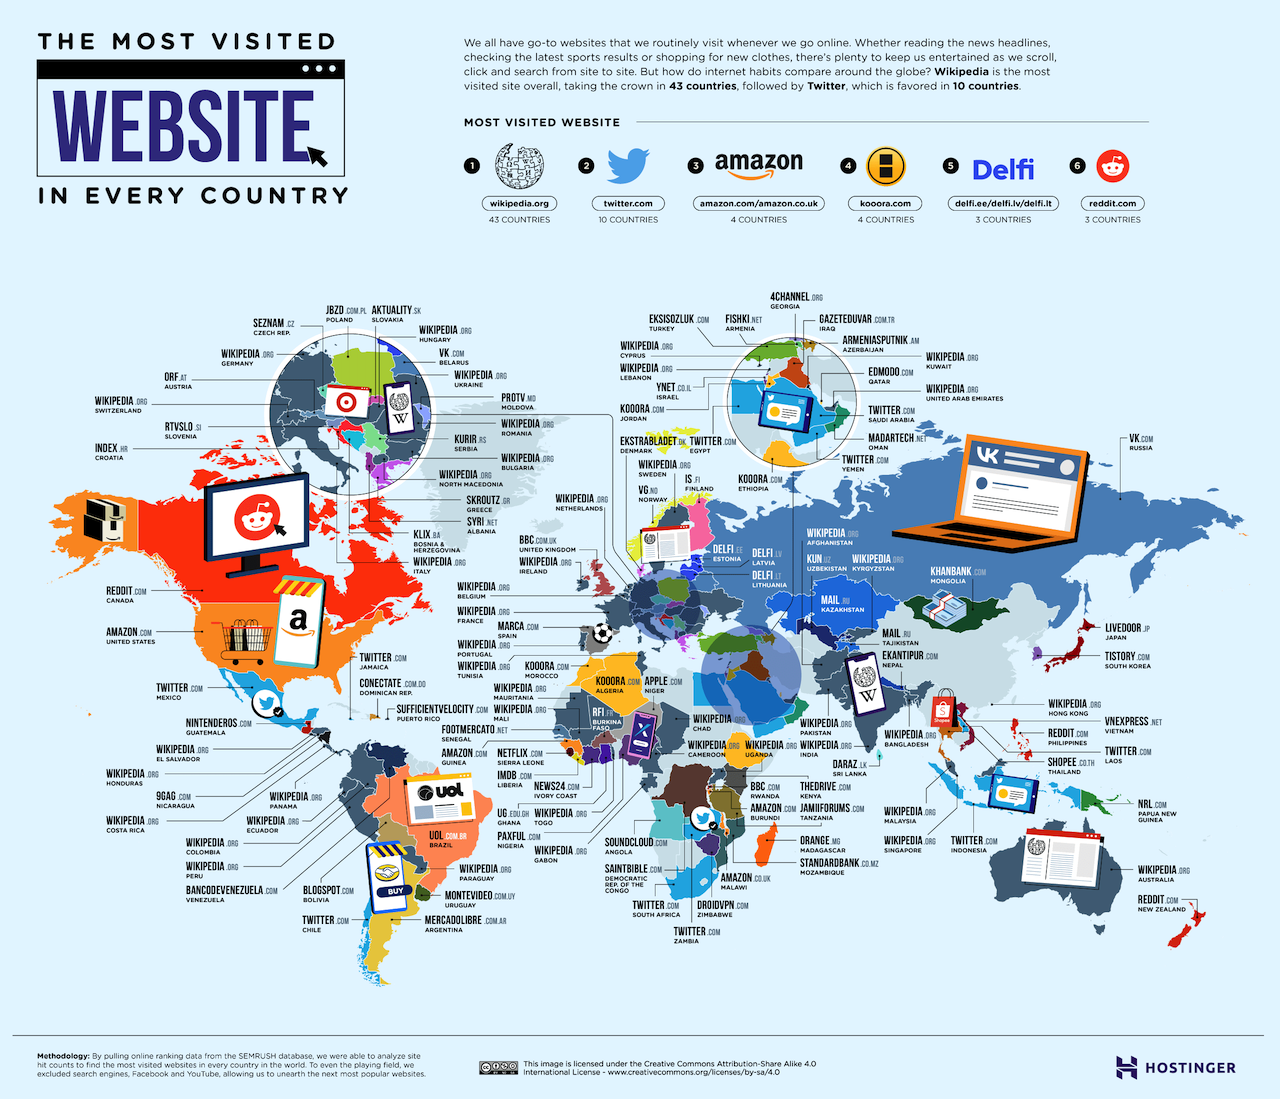 La wikipedia, la web más visitada. 01_The-Most-Visited-Website-in-Every-Country_Hi-RES-3